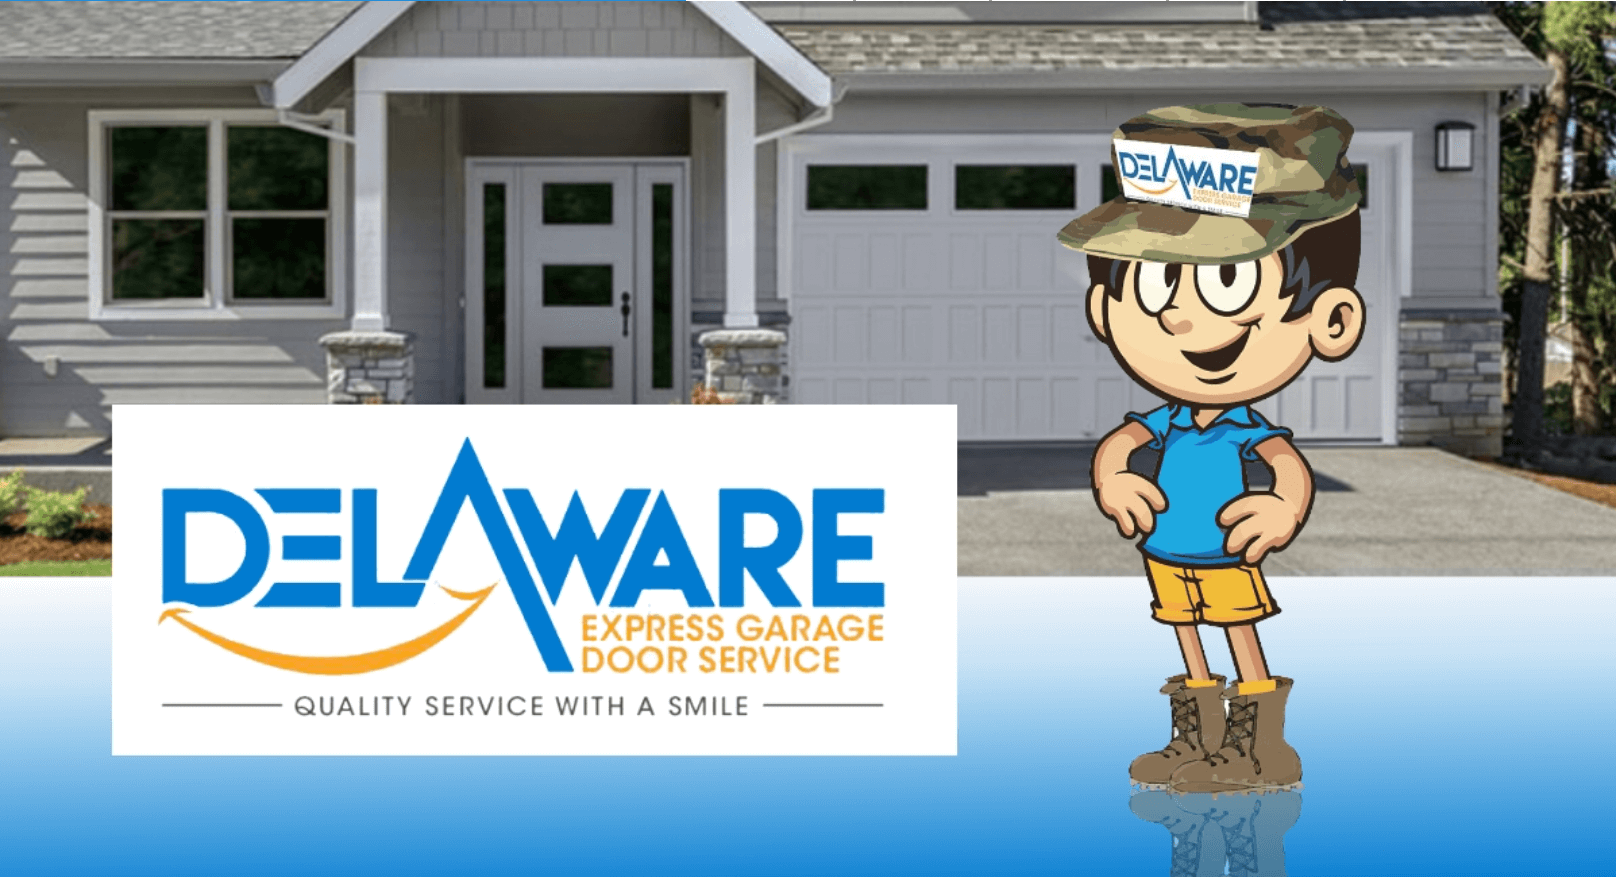 Delaware Express Garage Door Service Featured